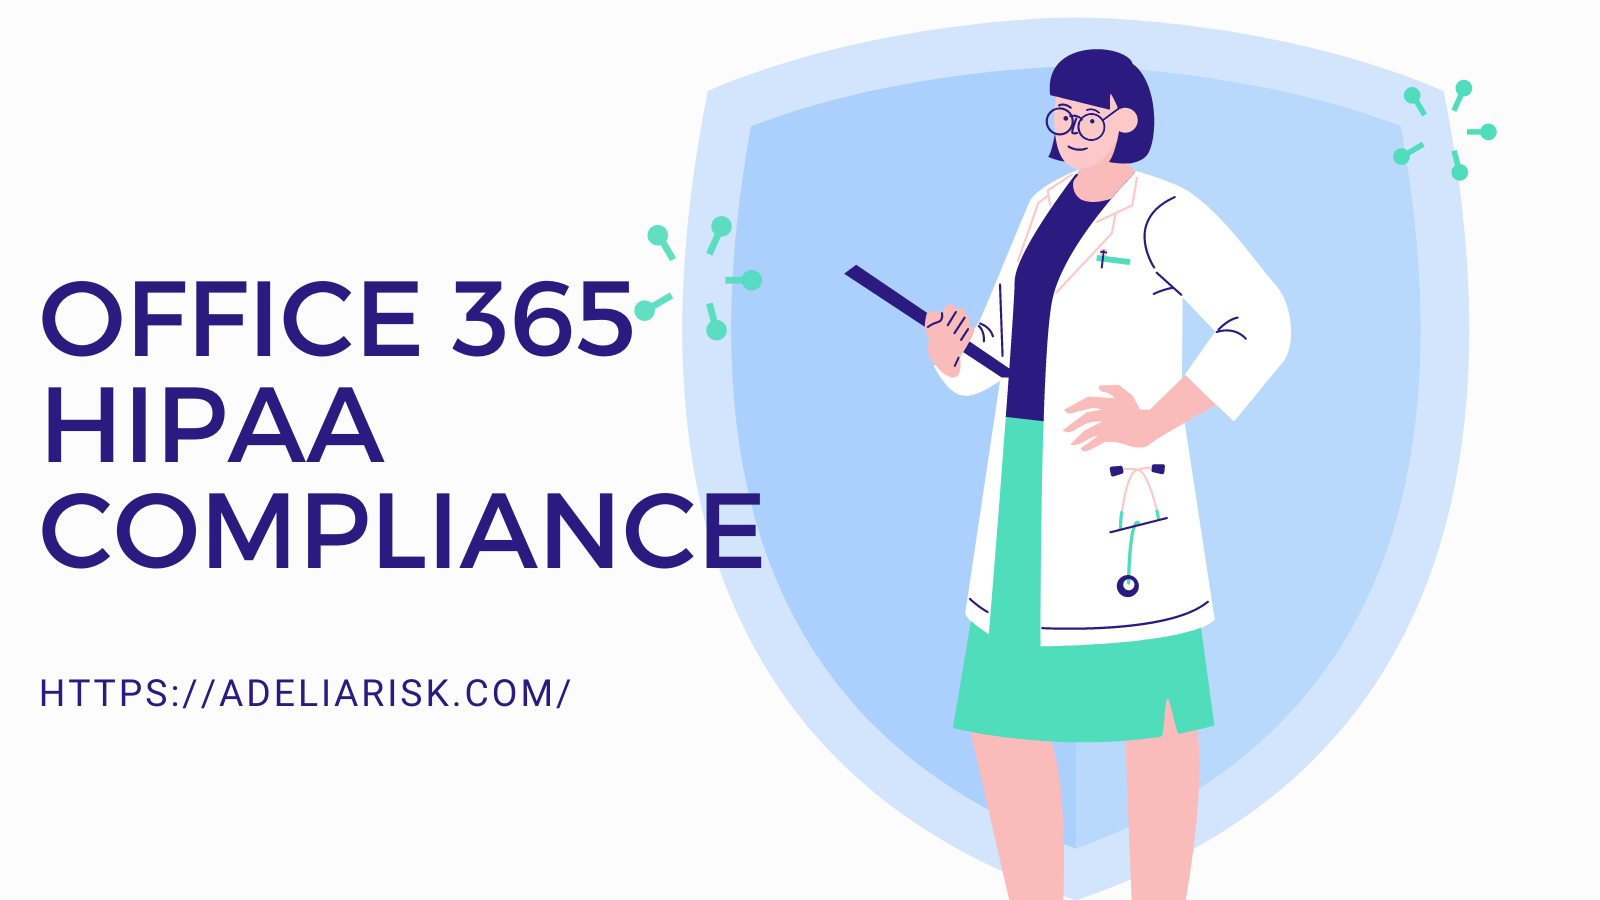 Office 365 HIPAA Compliance